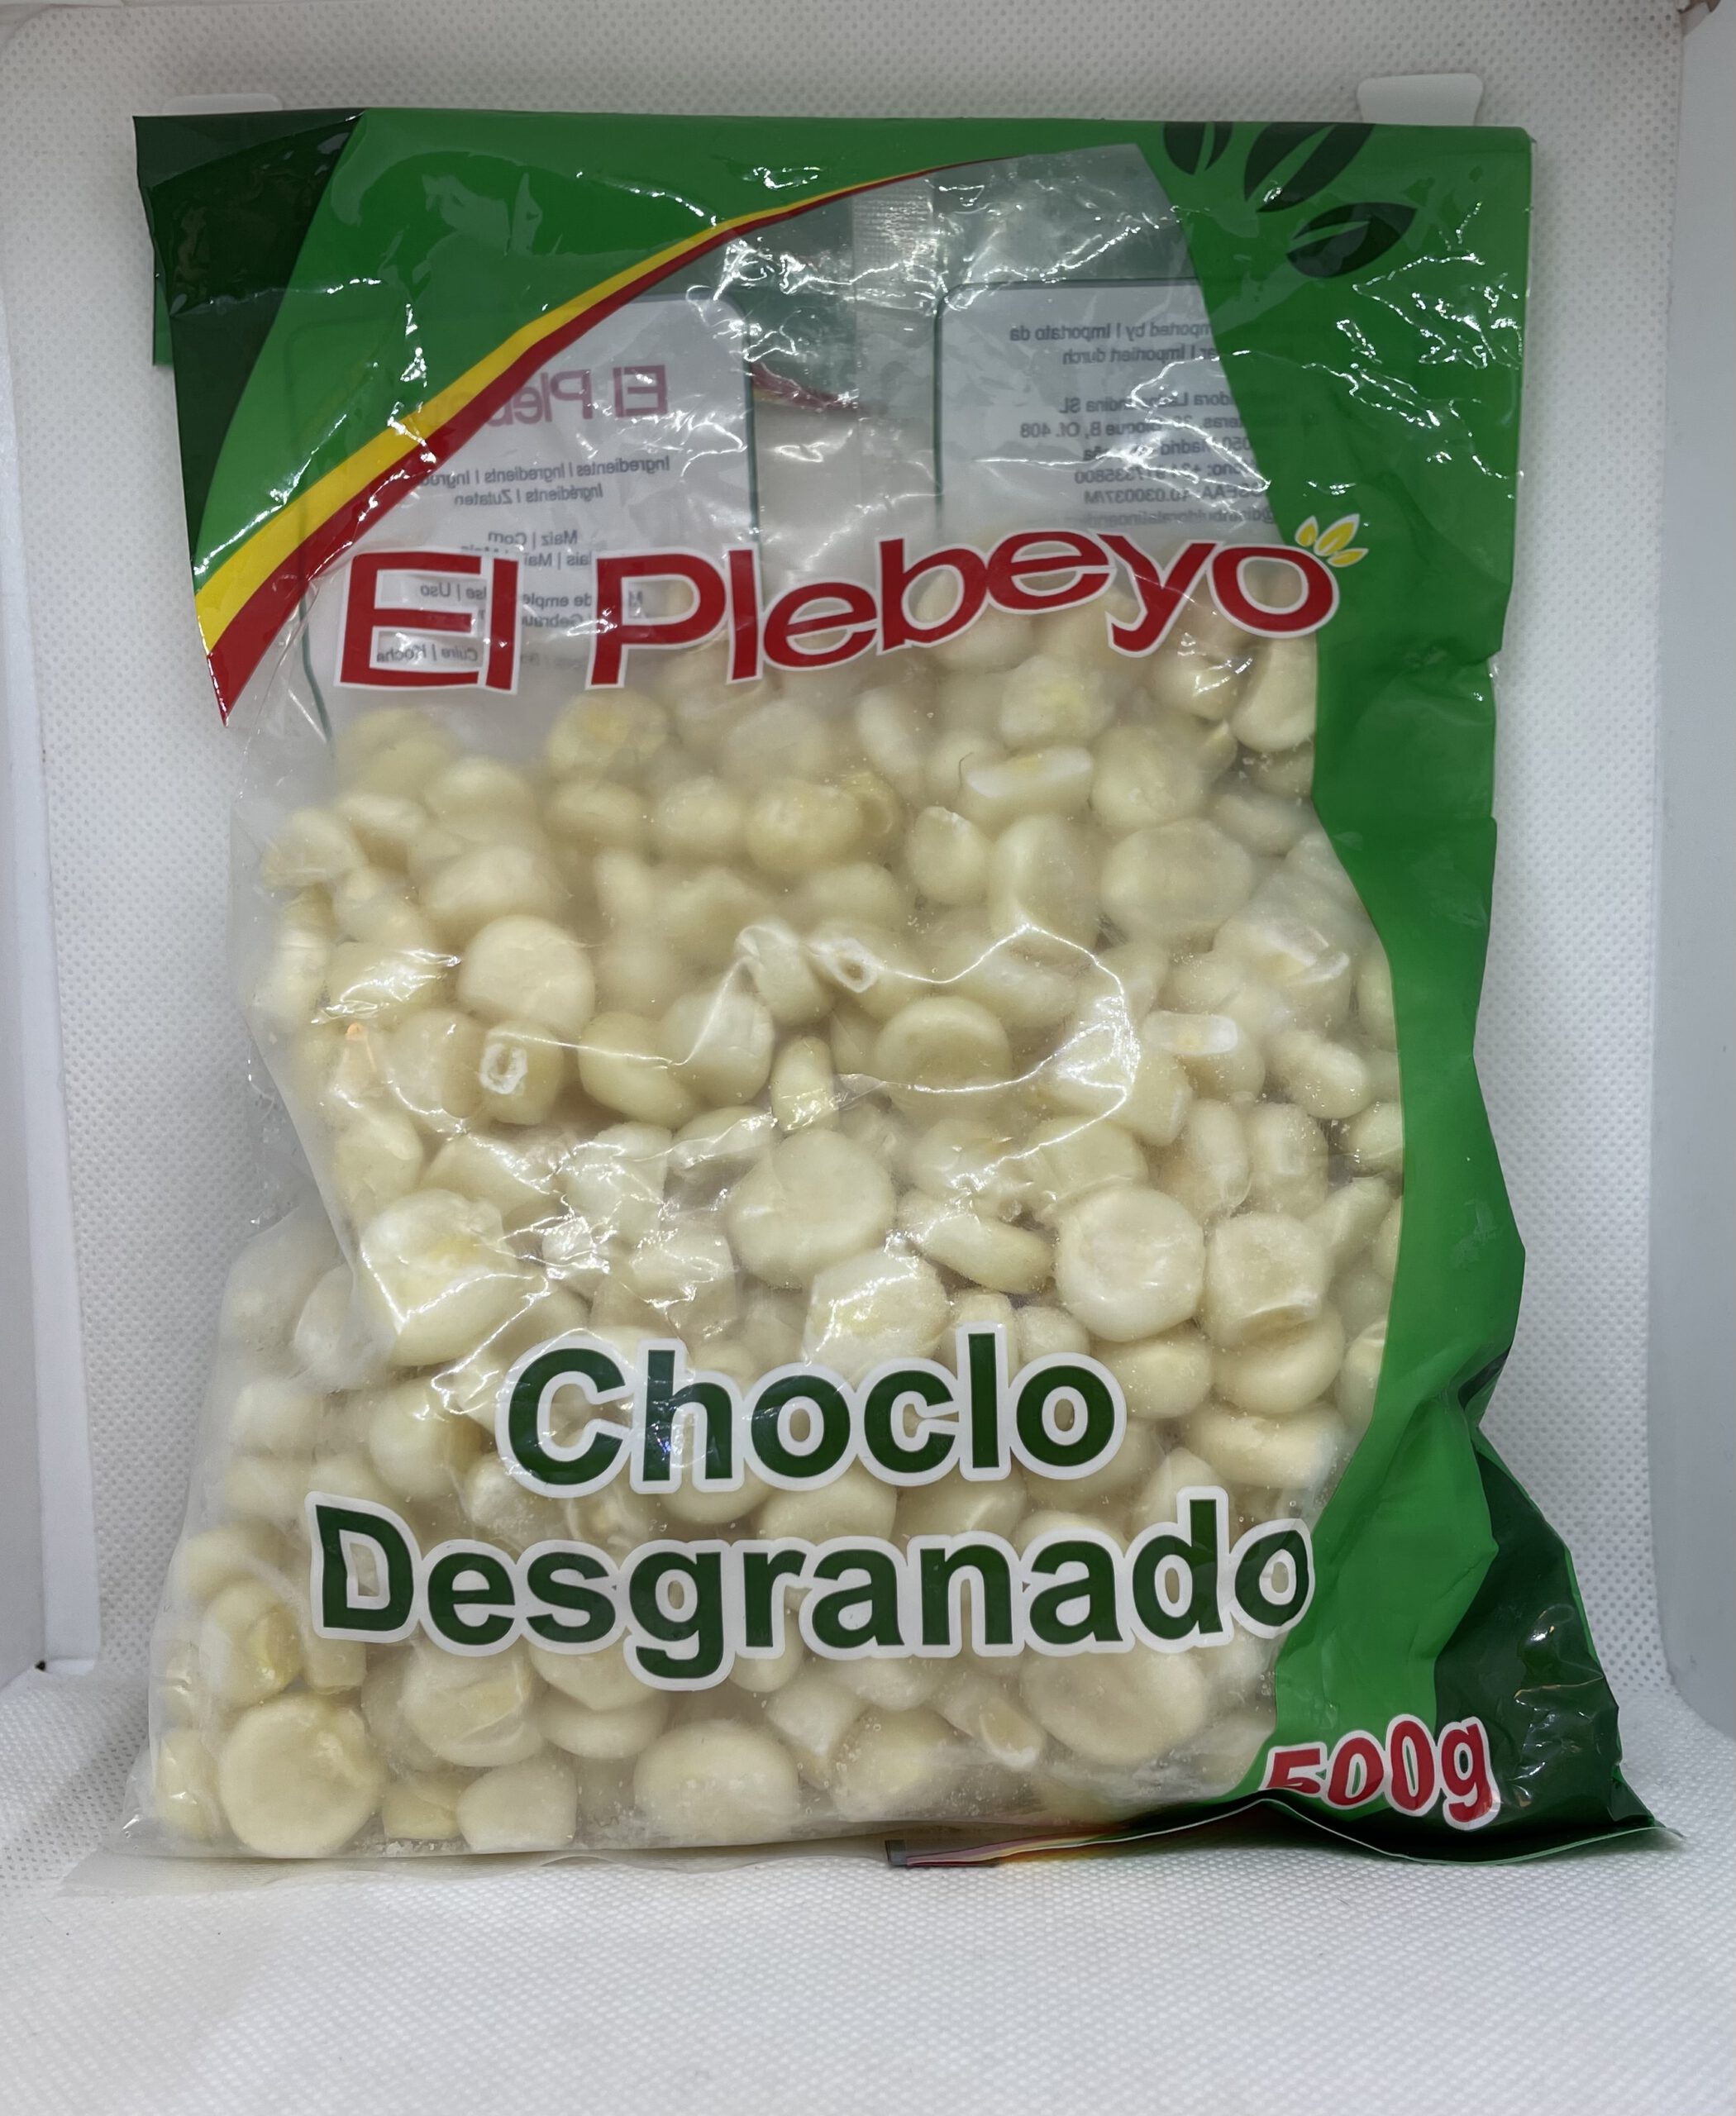 Choclo Desgranado El Plebeyo 500g (TK-Ware)